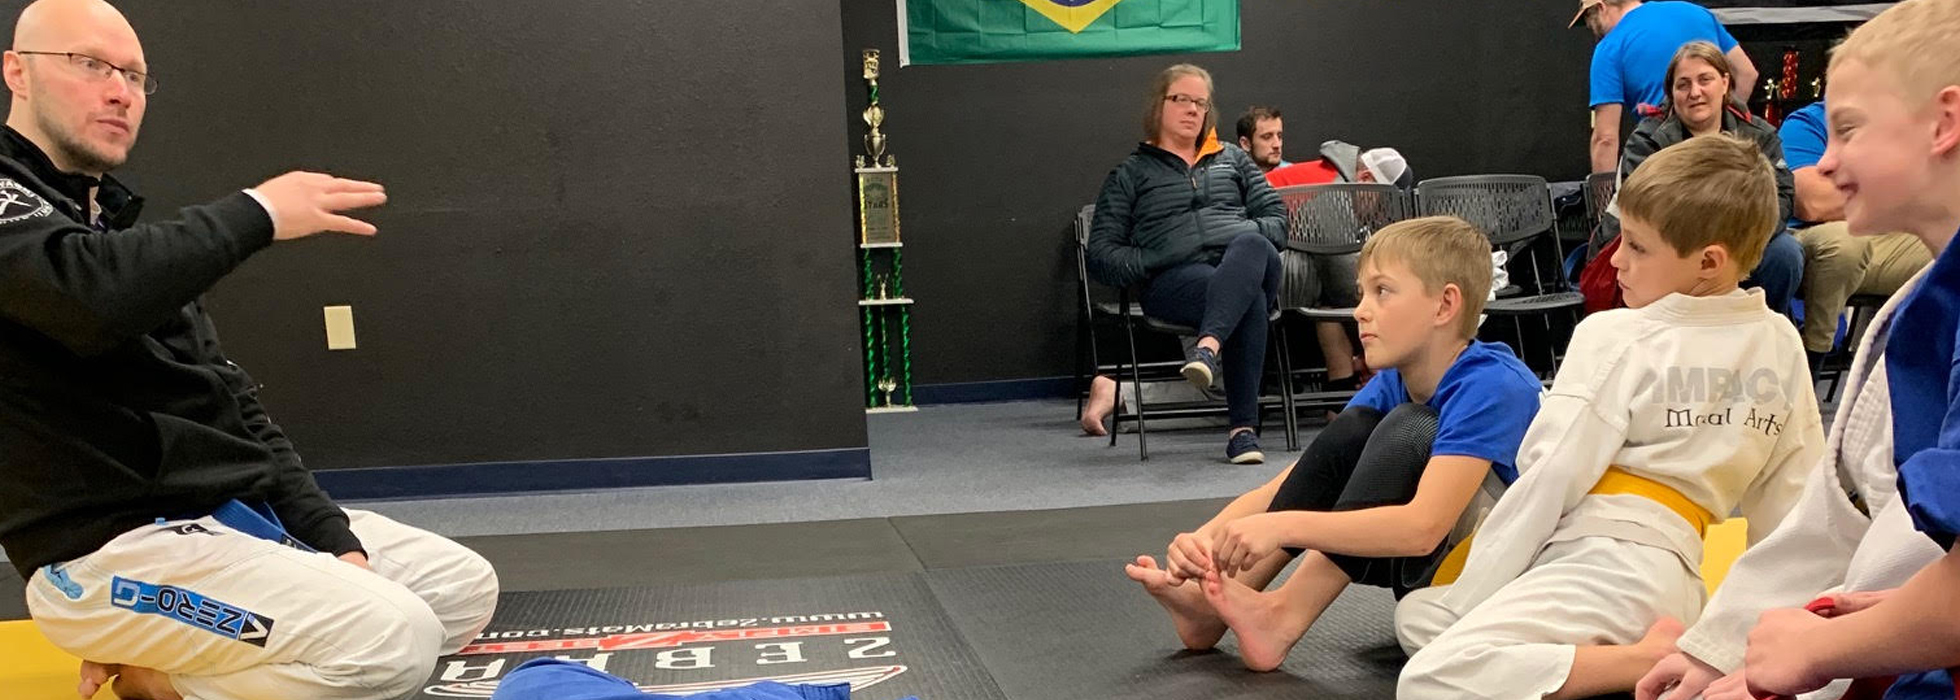 Kids Brazilian Jiu Jitsu in Oshkosh, WI close to Fox Cities